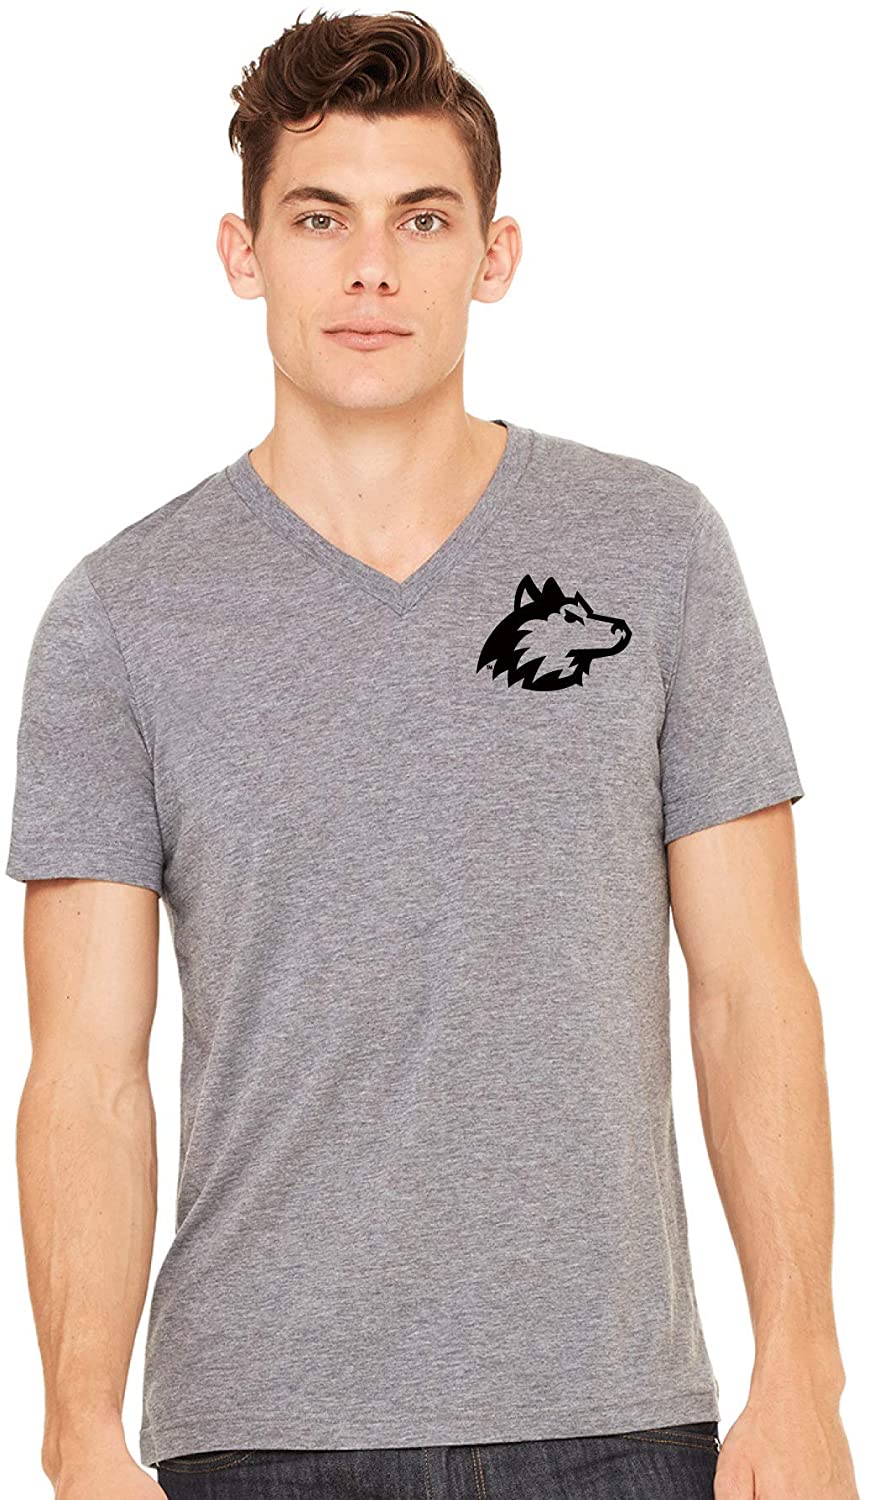 Northern Illinois University Huskies NCAA Mascot Unisex Vneck T-Shirt